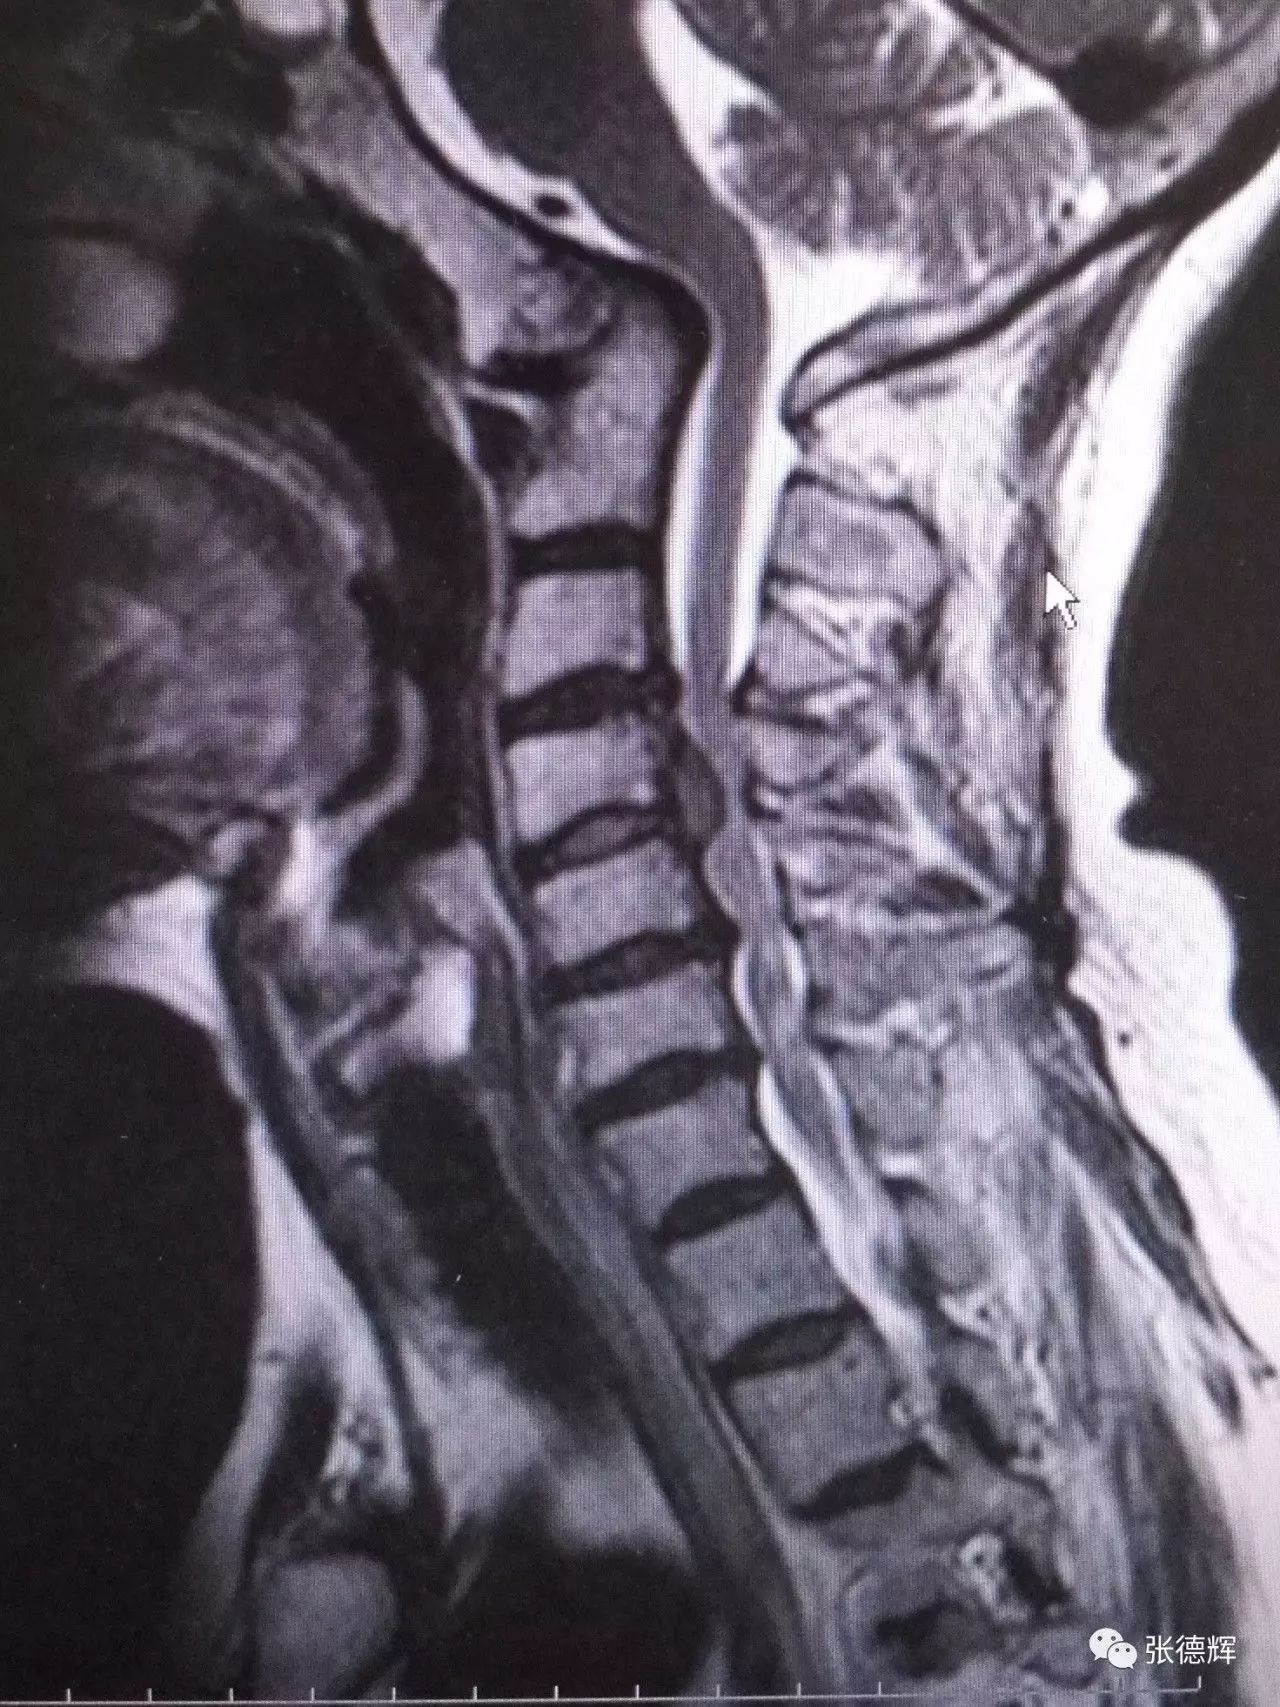 诊断 1,脊髓型颈椎病(颈4-5 椎间盘脱出;2,寰枕融合,颅底凹陷畸形